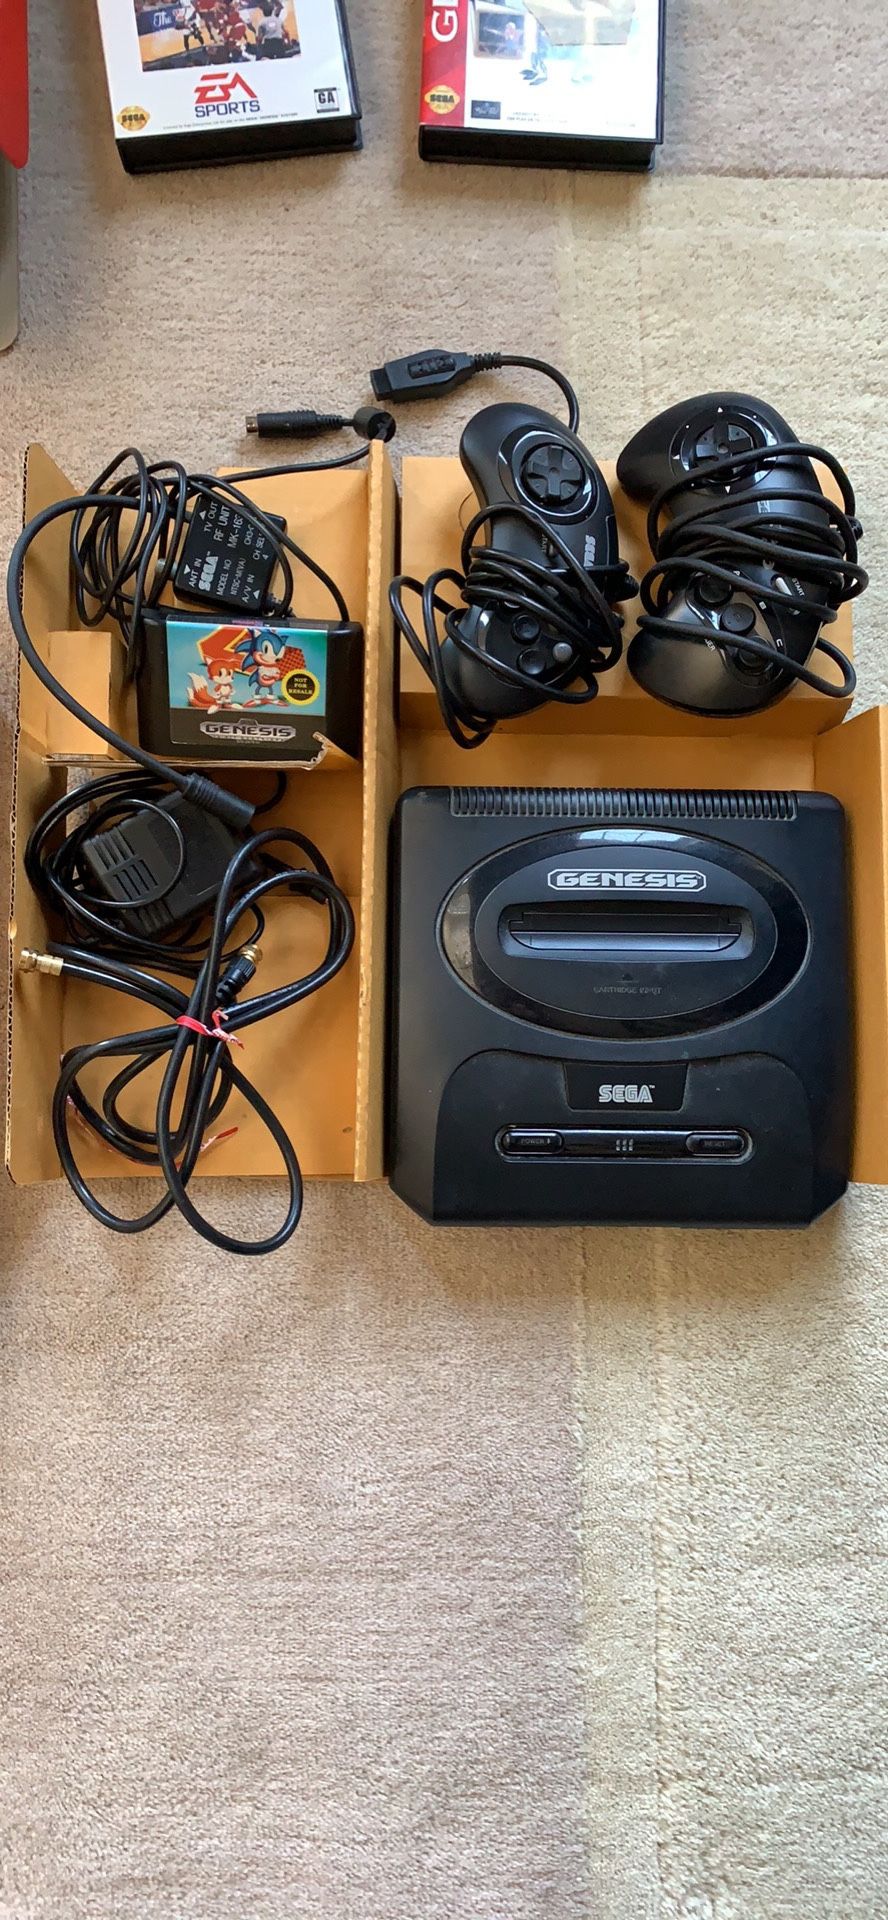 Sega Genesis gaming system with original box, 2 controllers and 5 games